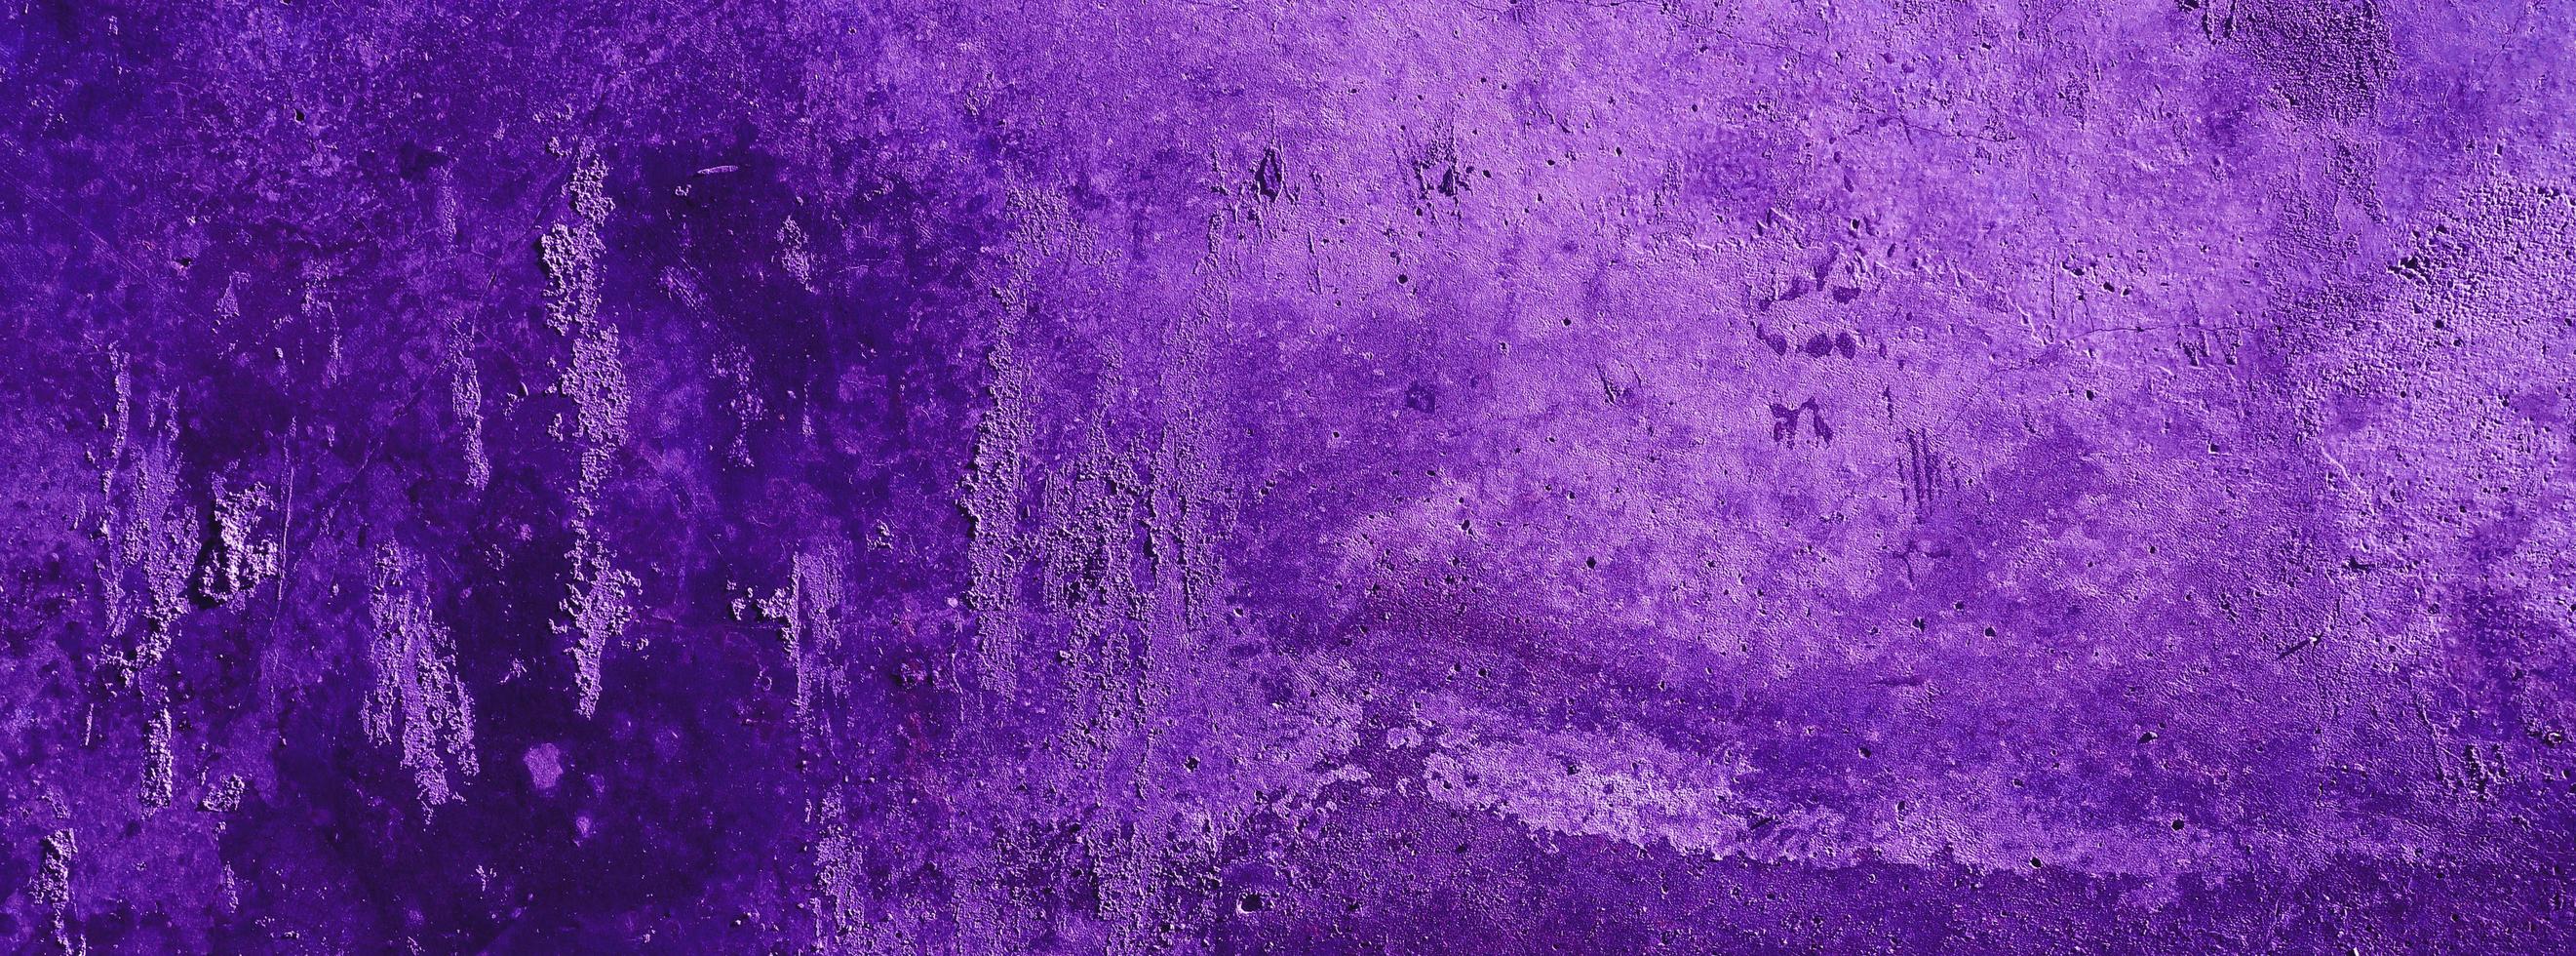 lila wand hintergrund.betonwand verputzt lila kratzer hintergrund.grunge textur. foto